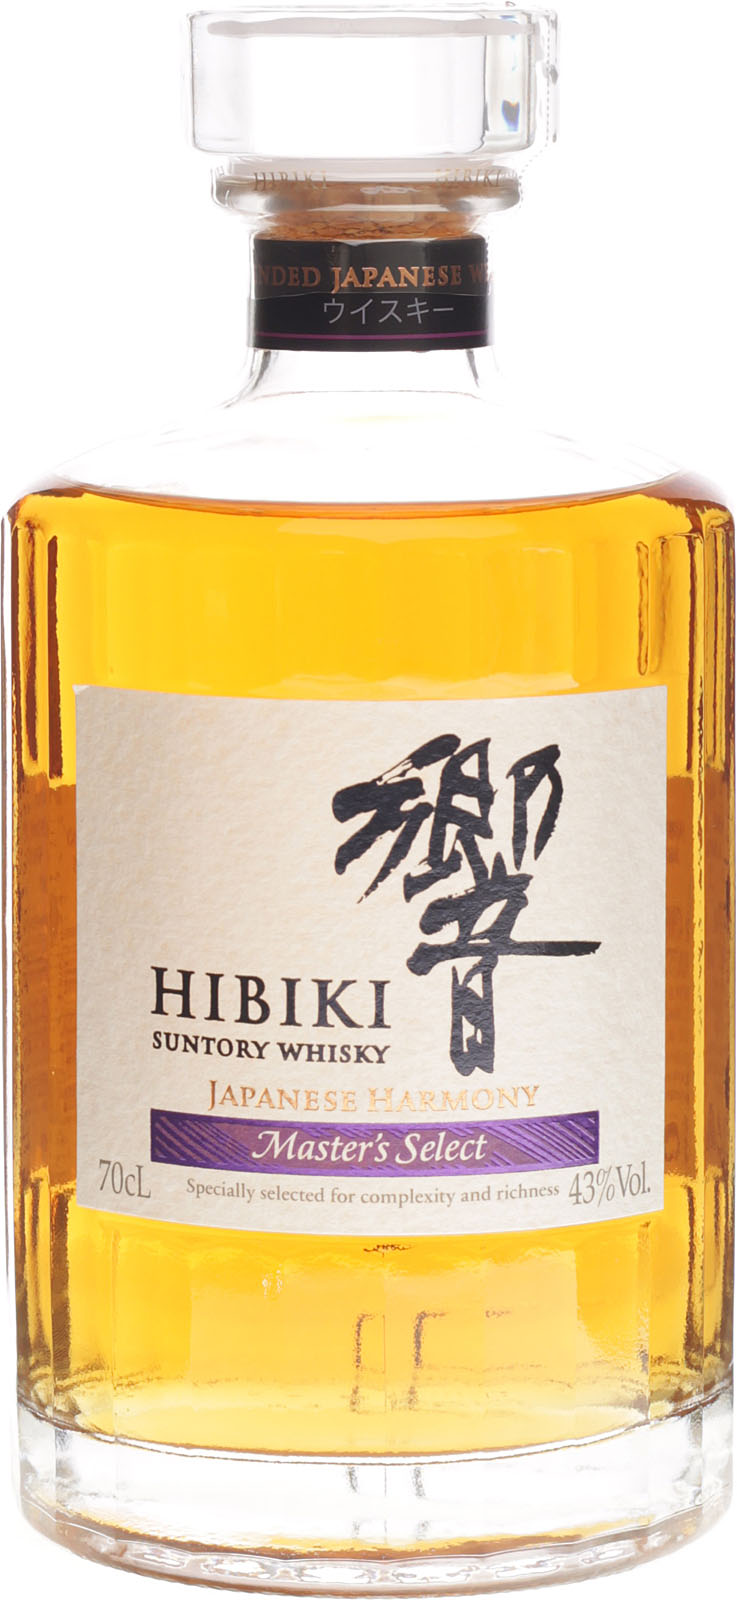 Hibiki Japanese Harmony 0,7L (43% Vol.)